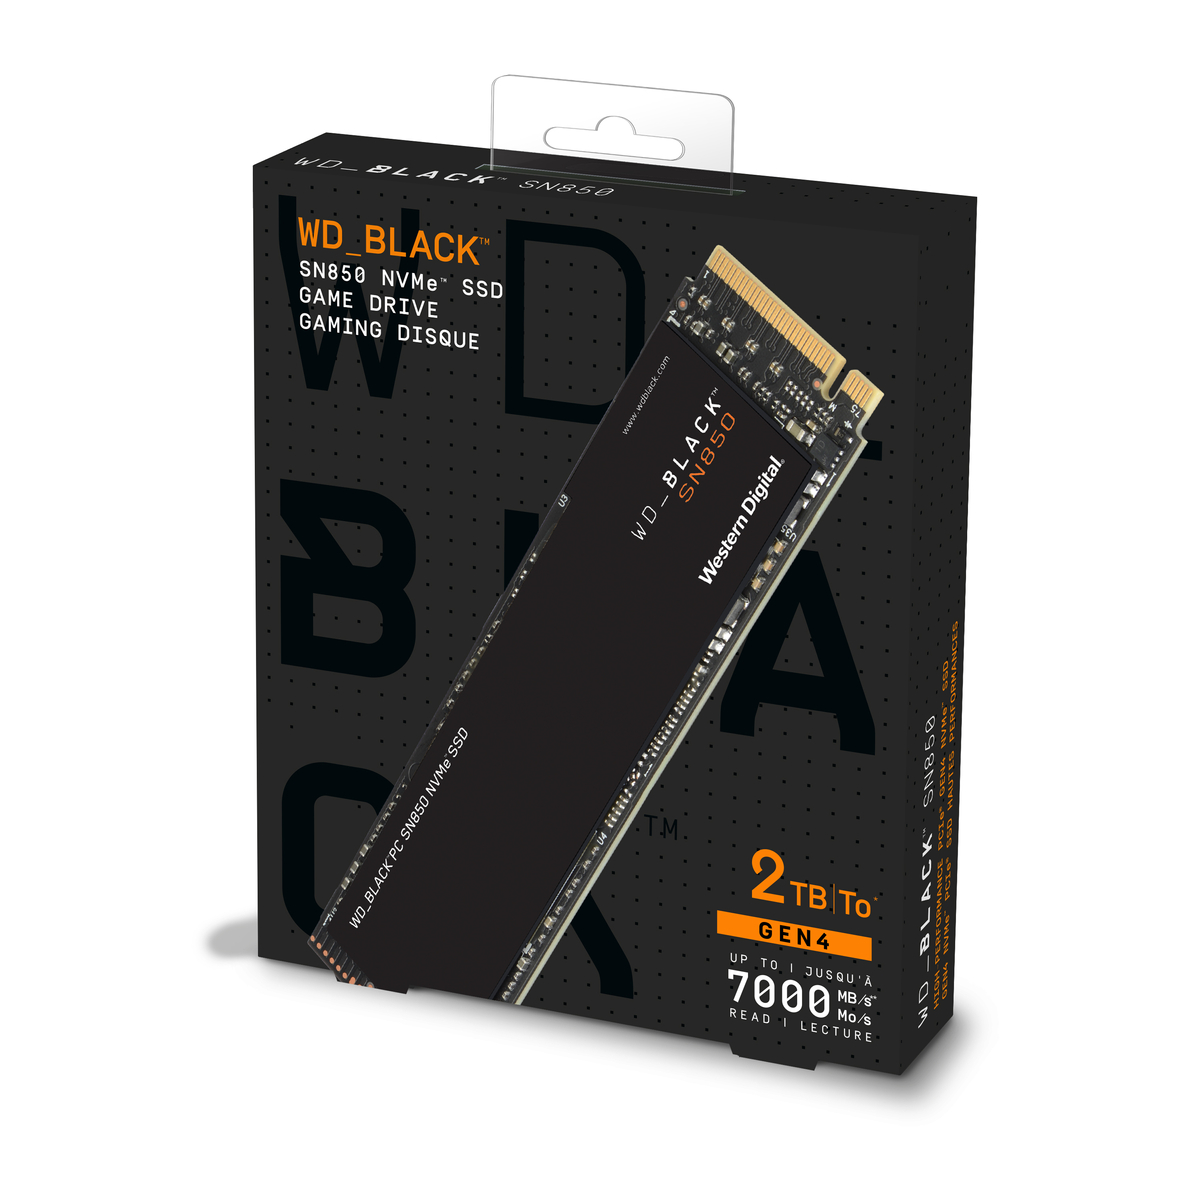 Обзор твердотельного накопителя WD_BLACK SN850 NVMe PCIe 4.0 — чемпион среди SSD